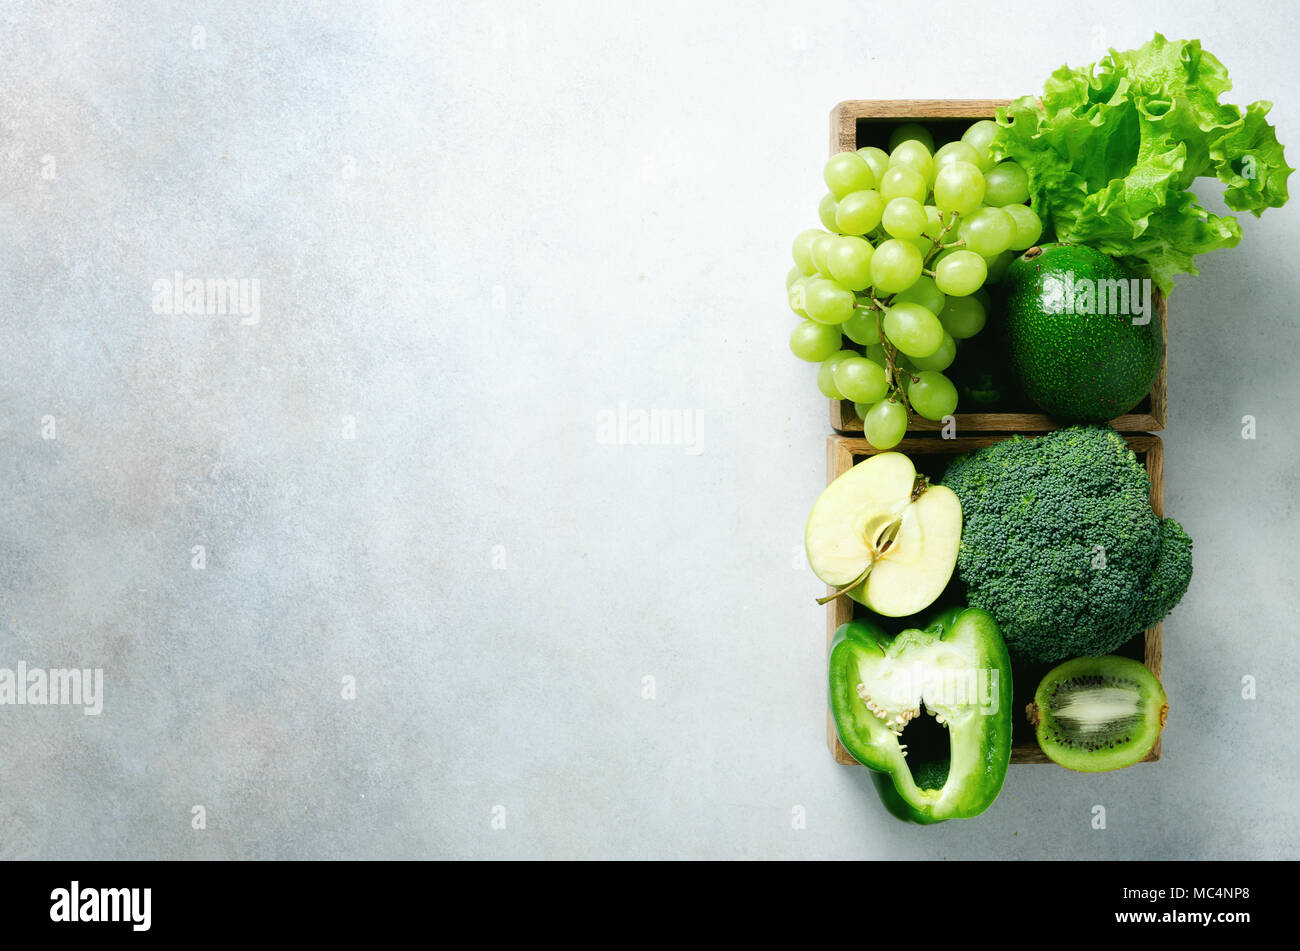 Verde biologico di frutta e verdura su sfondo grigio. Spazio di copia, piatto di laici che, vista dall'alto. Verde mela, lattuga, zucchini, cetrioli, avocado, kale, calce, kiwi, uva, banana, broccoli Foto Stock